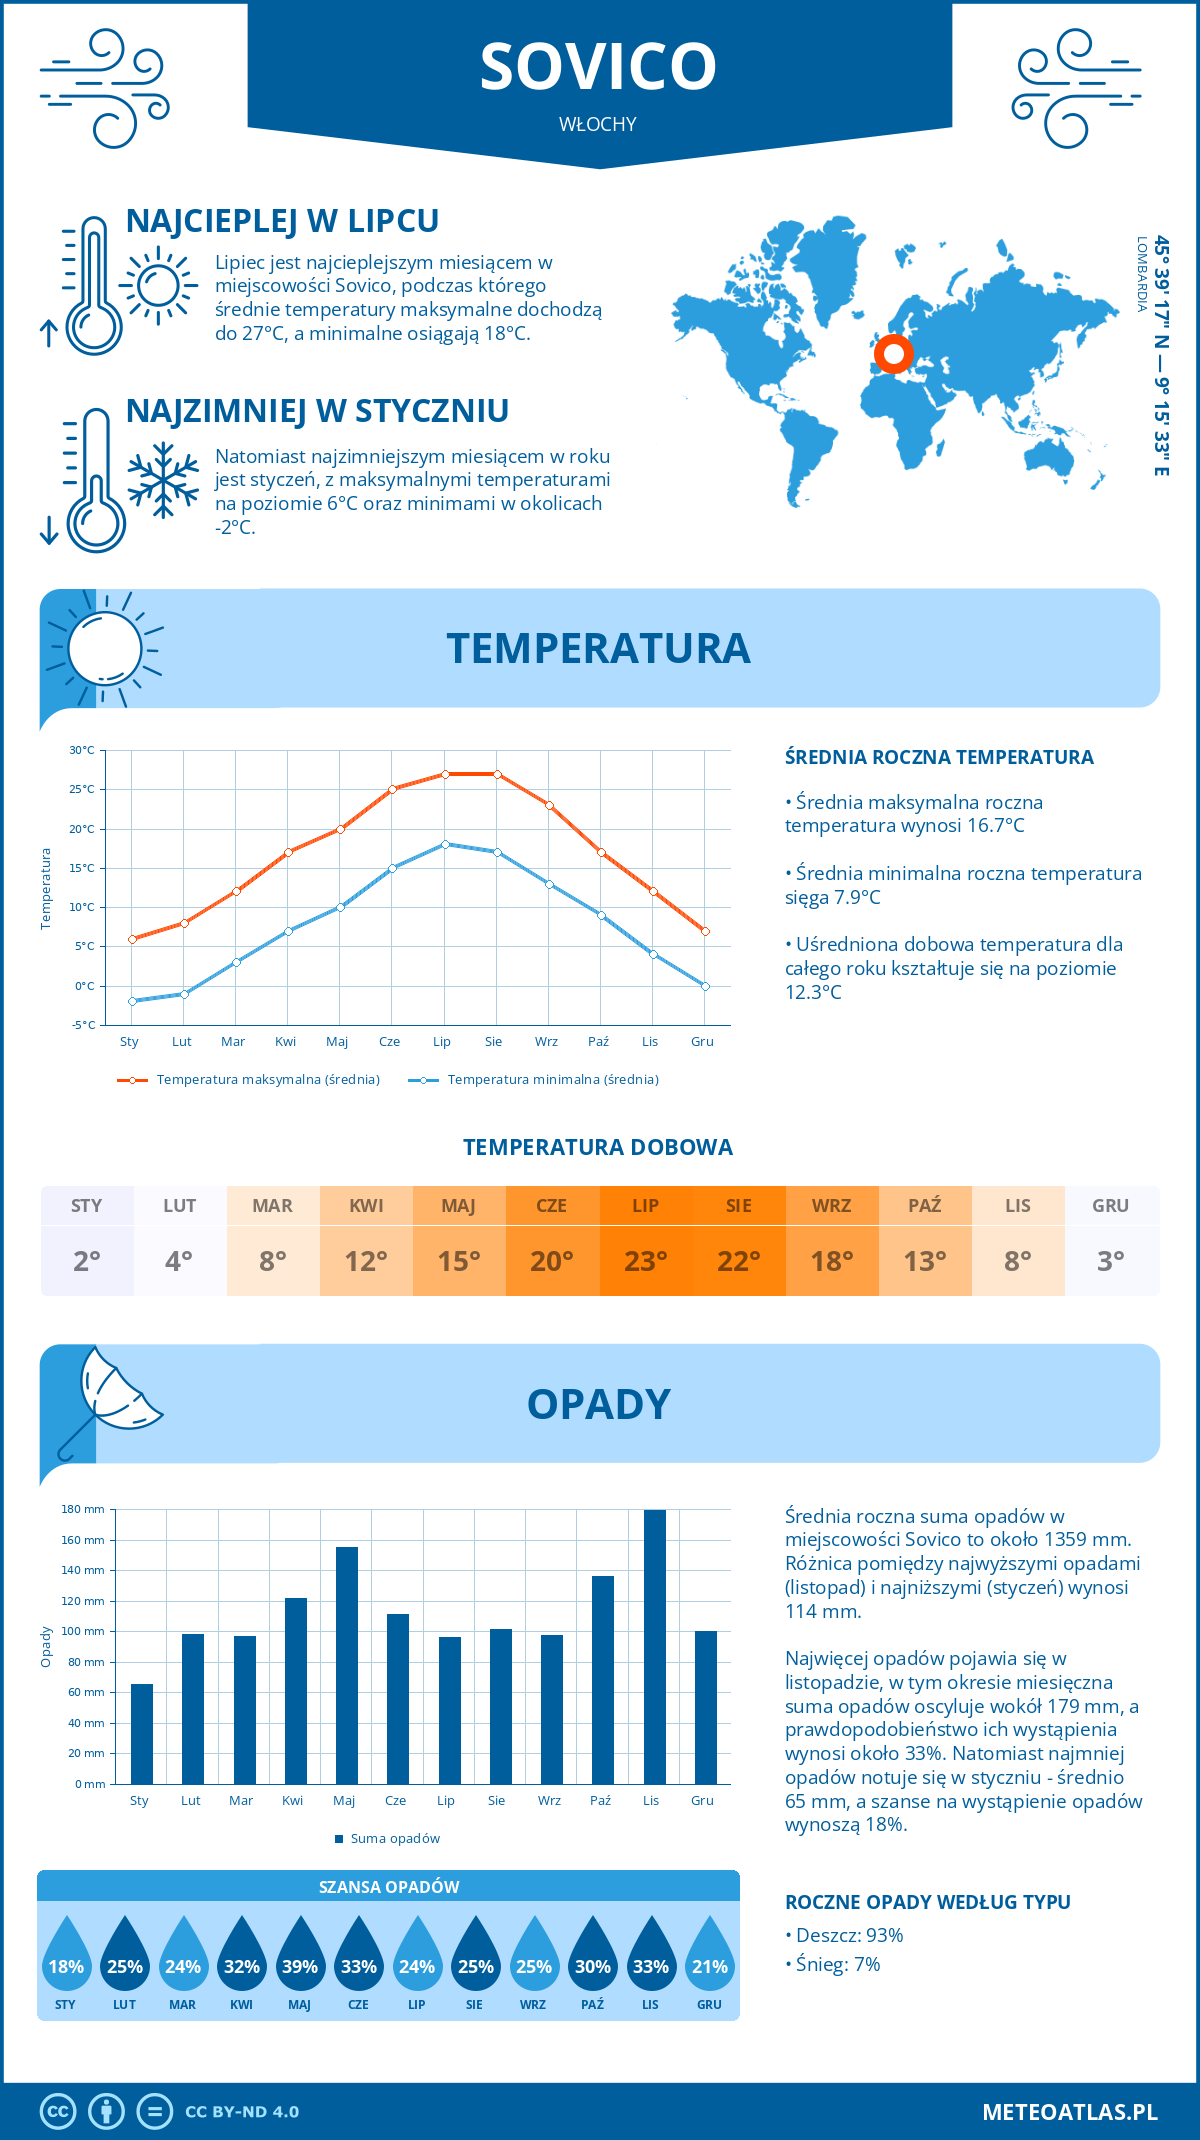 Pogoda Sovico (Włochy). Temperatura oraz opady.